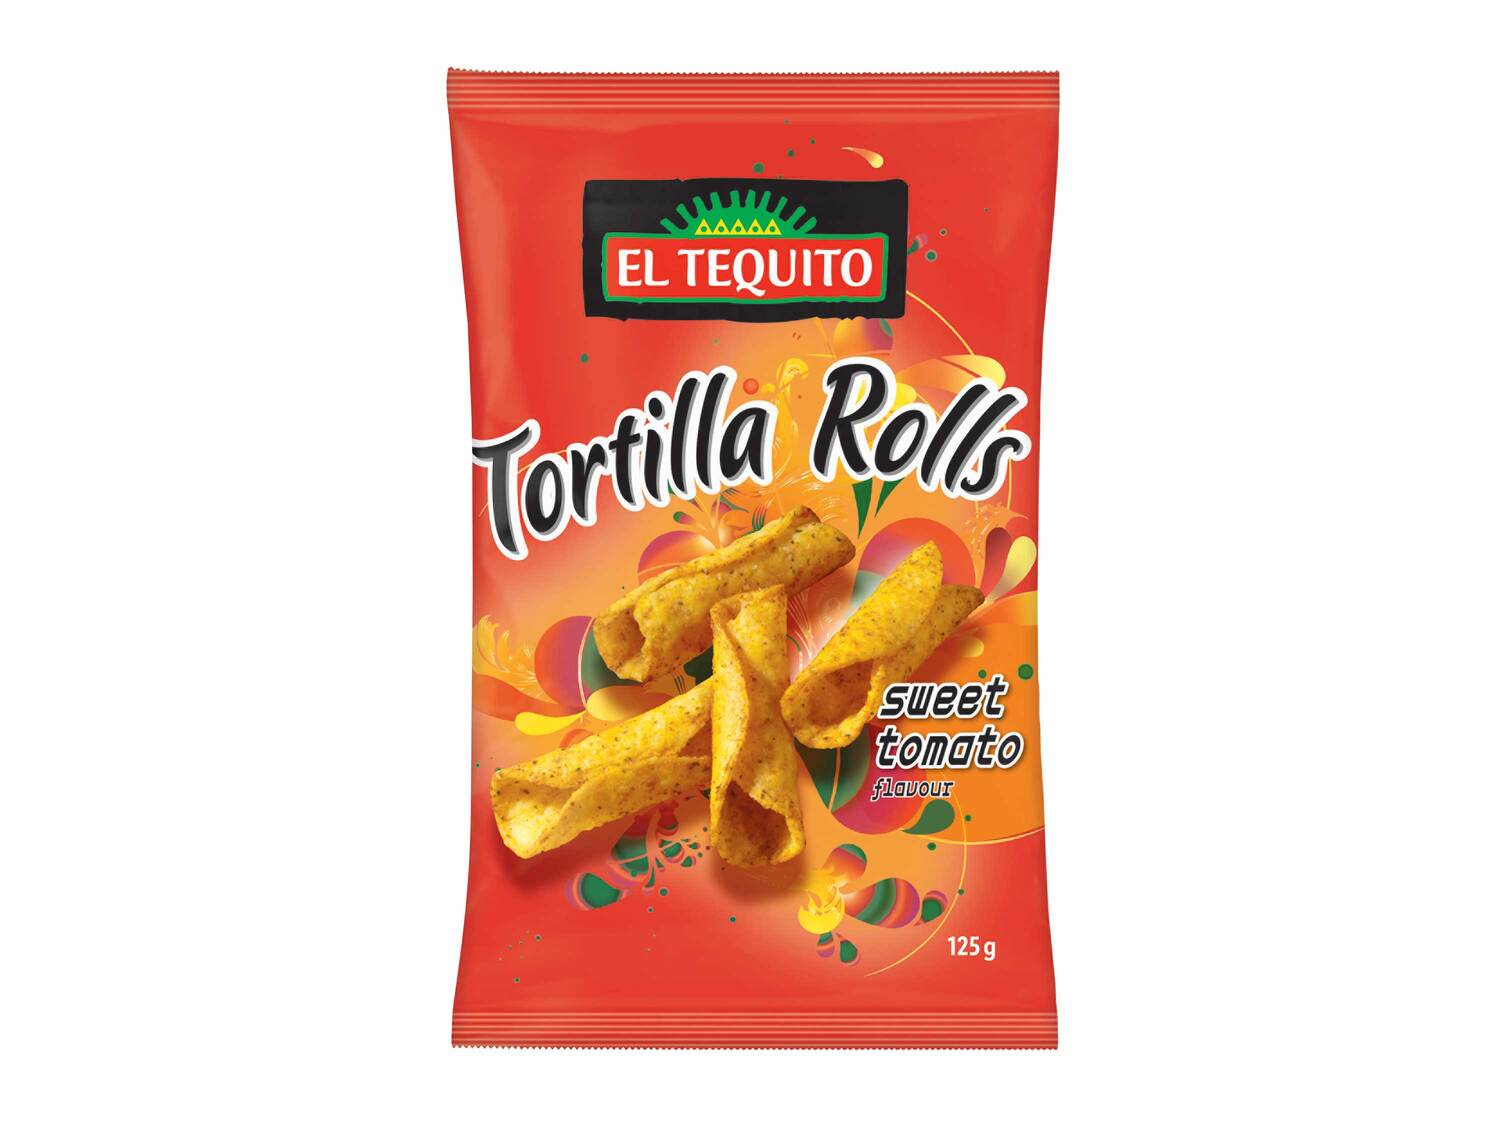 Tortilla Rolls chips , le prix 0.89 €  
-  Au choix : saveur fromage ou tomate